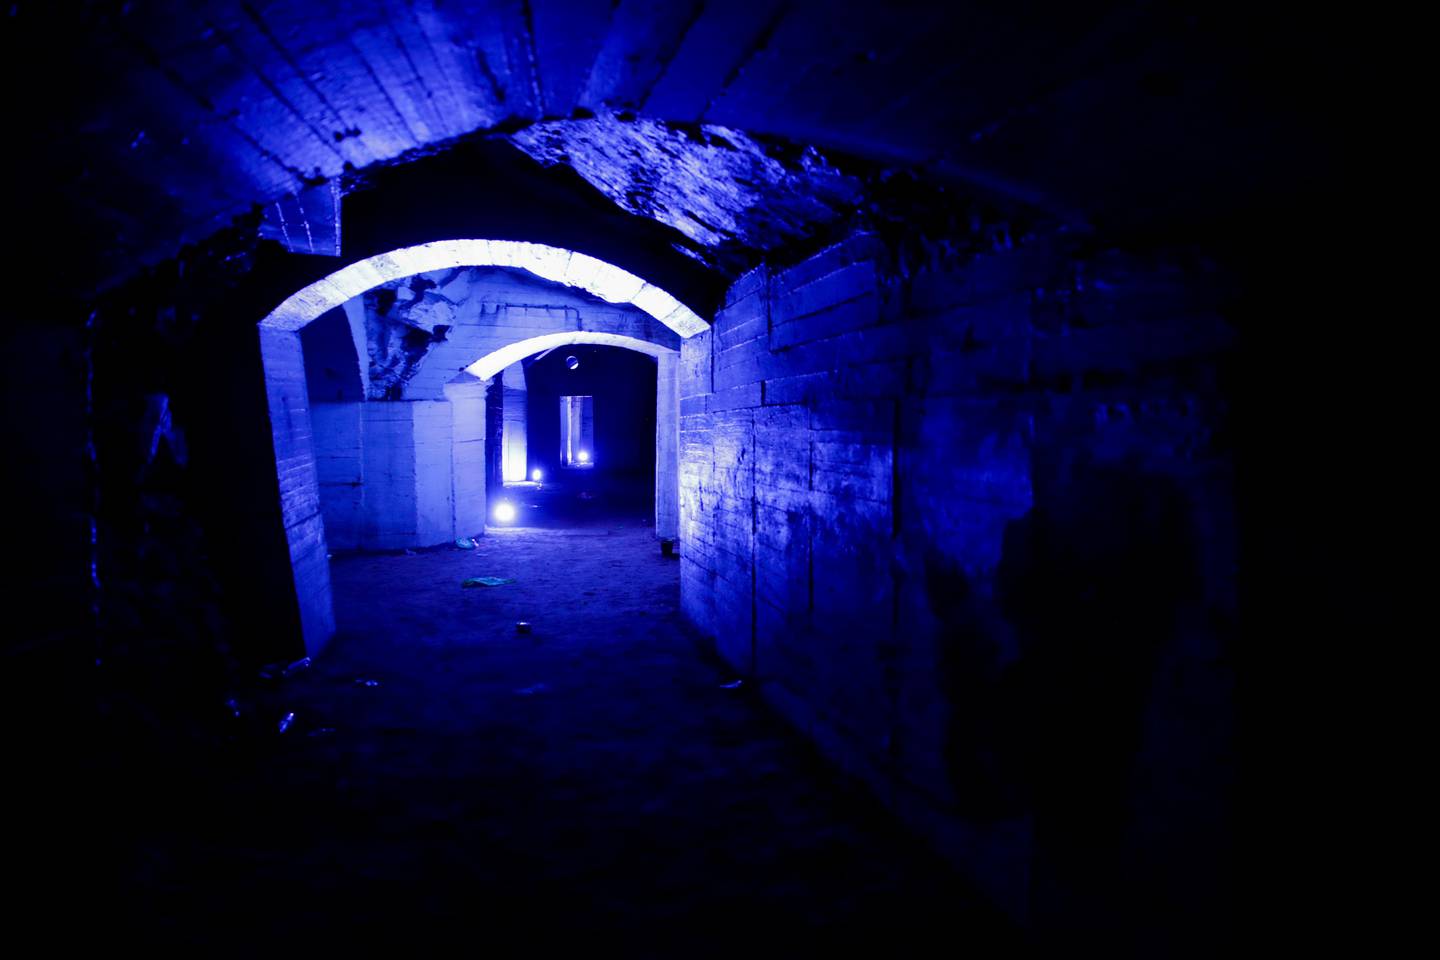 Oslo 20200903. 
Grotten på St. Hanshaugen der flere personer ble skadet av kullosforgiftning etter en fest natt til søndag ble i dag åpnet for pressen.
Foto: Vidar Ruud / NTB scanpix